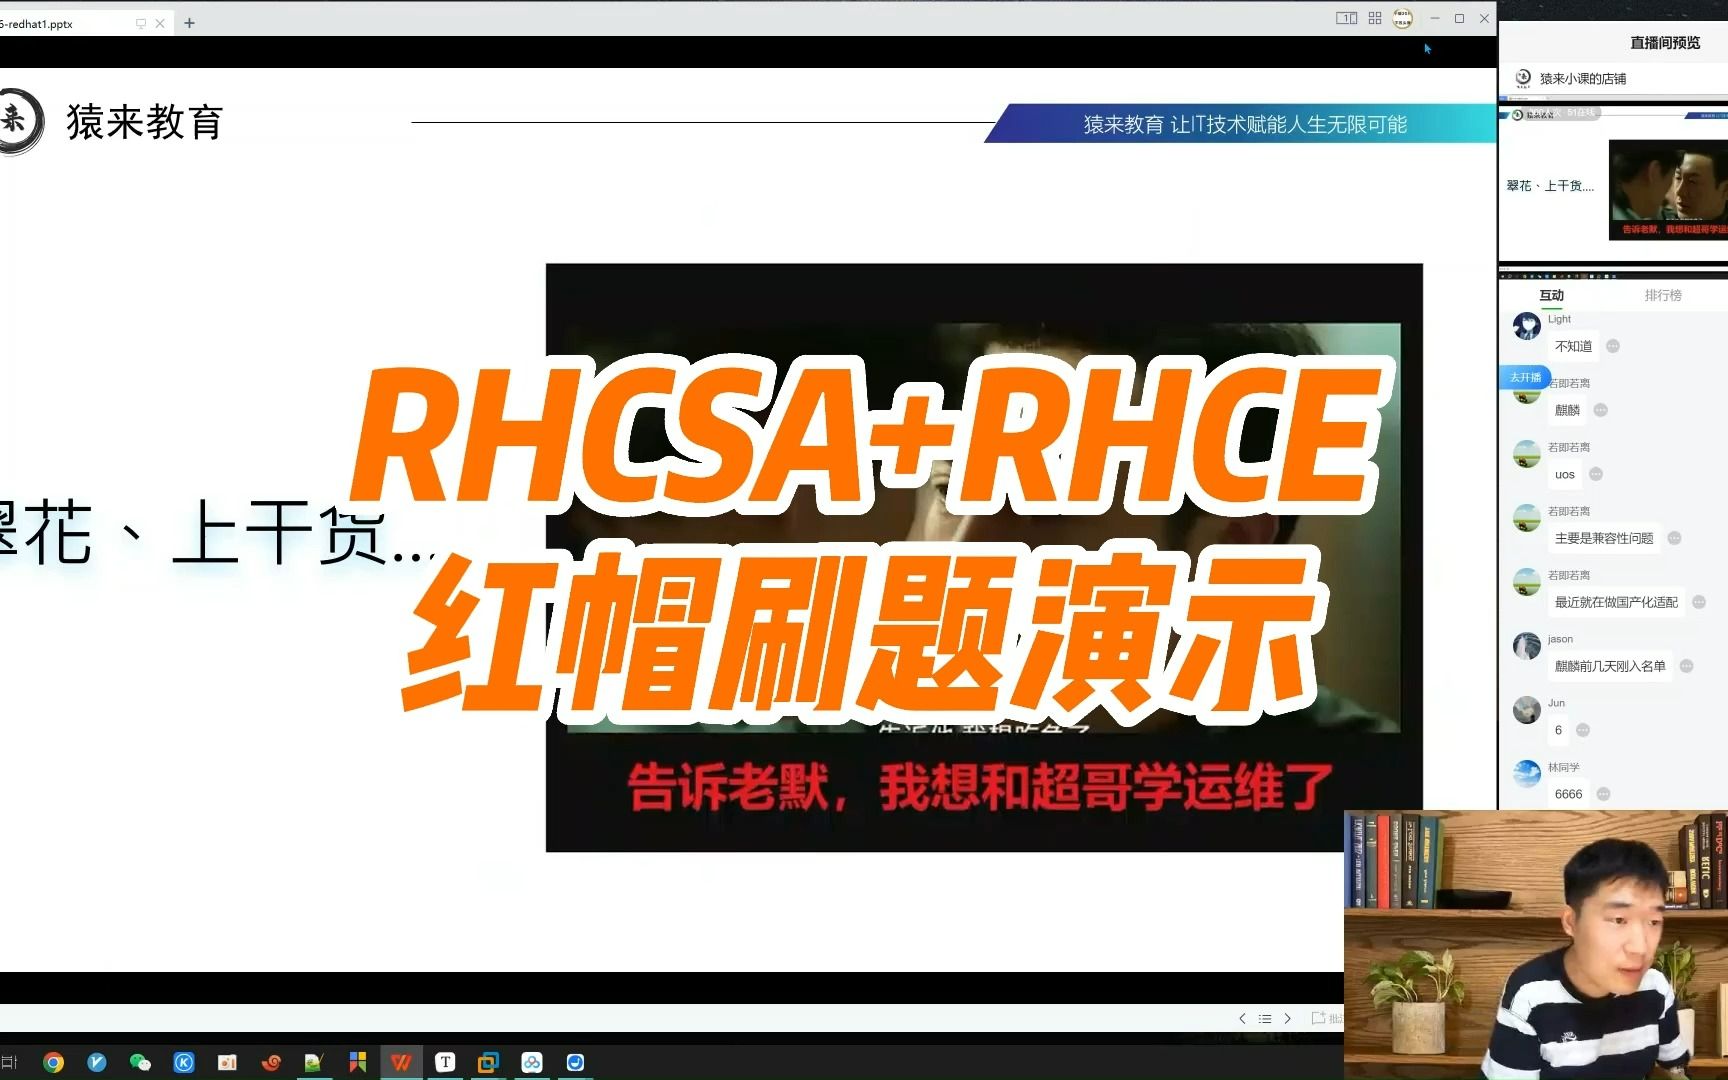 RHCSA+RHCE，红帽现场刷题演示